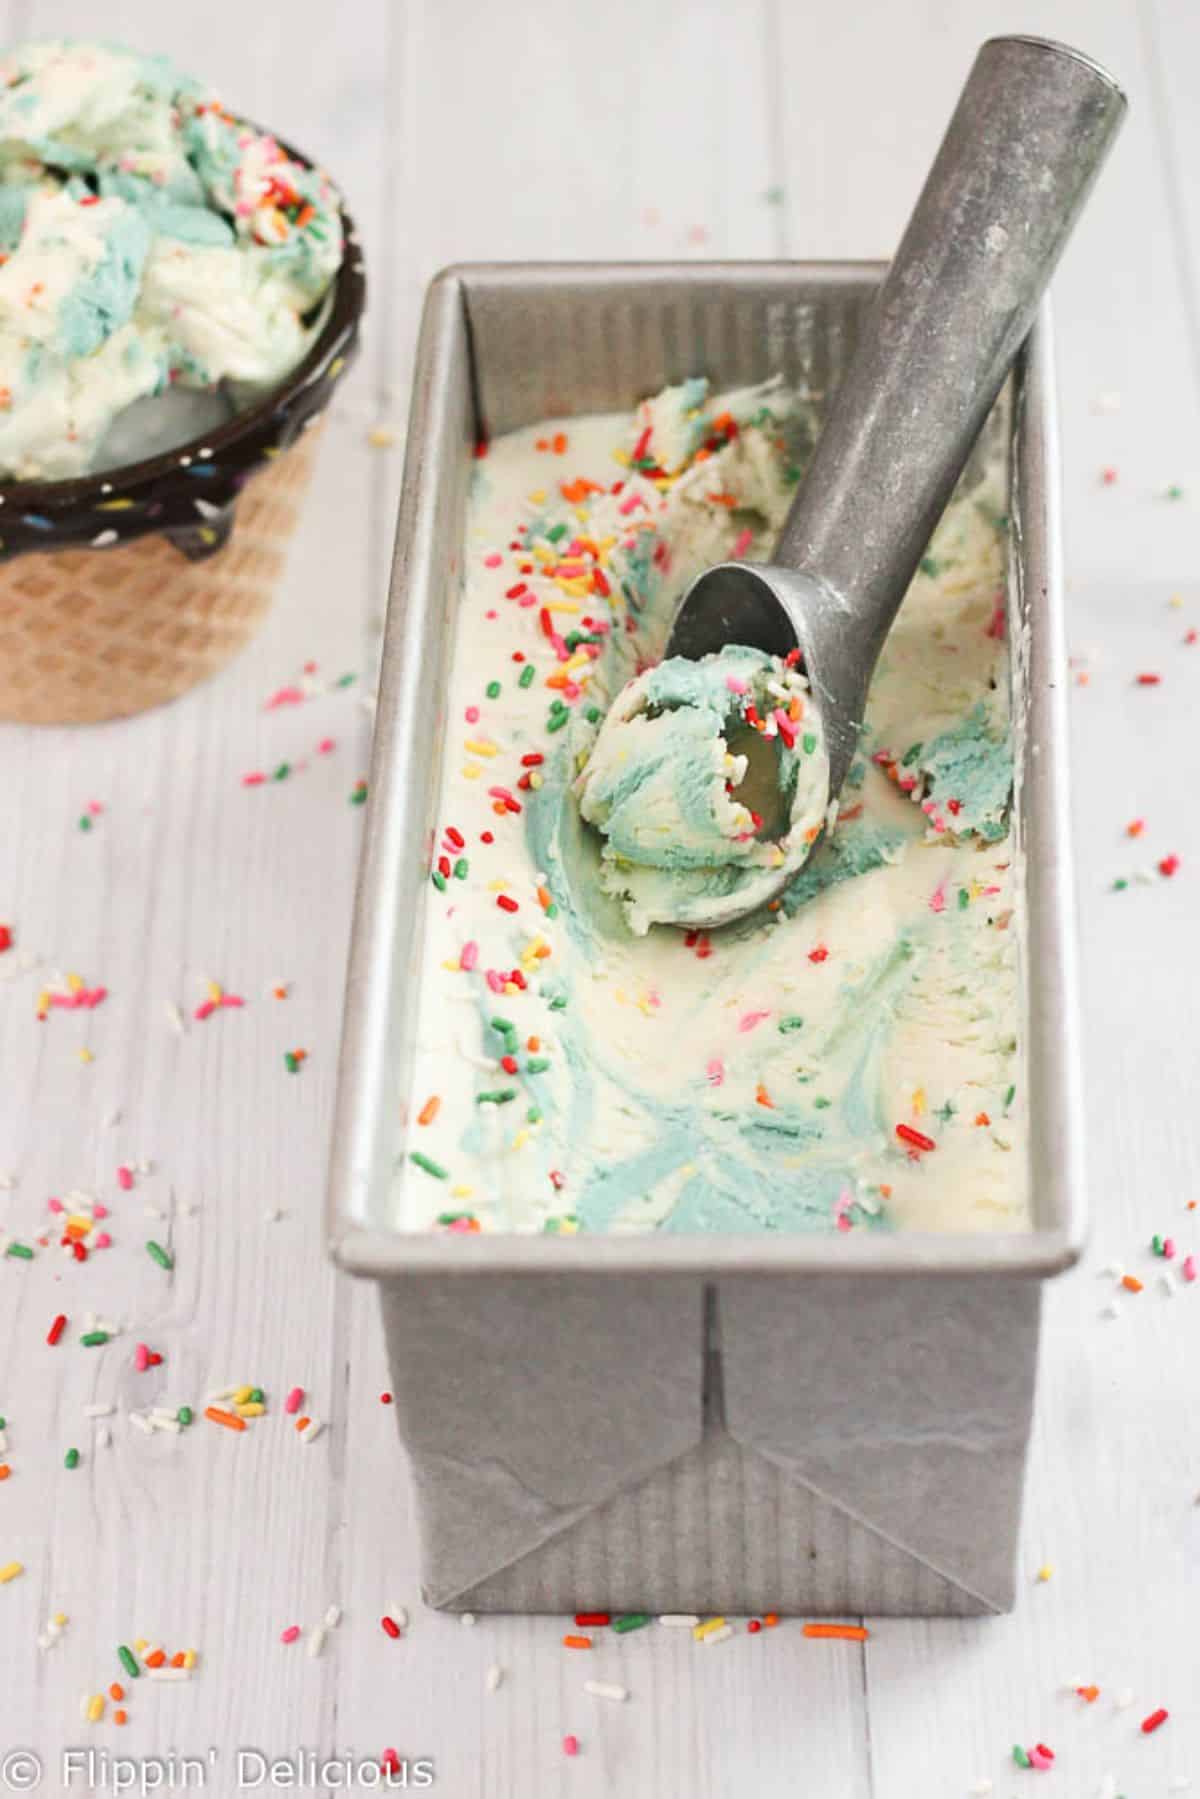 Delicious Funfetti Cake Batter Ice Cream in an ice-cream container.